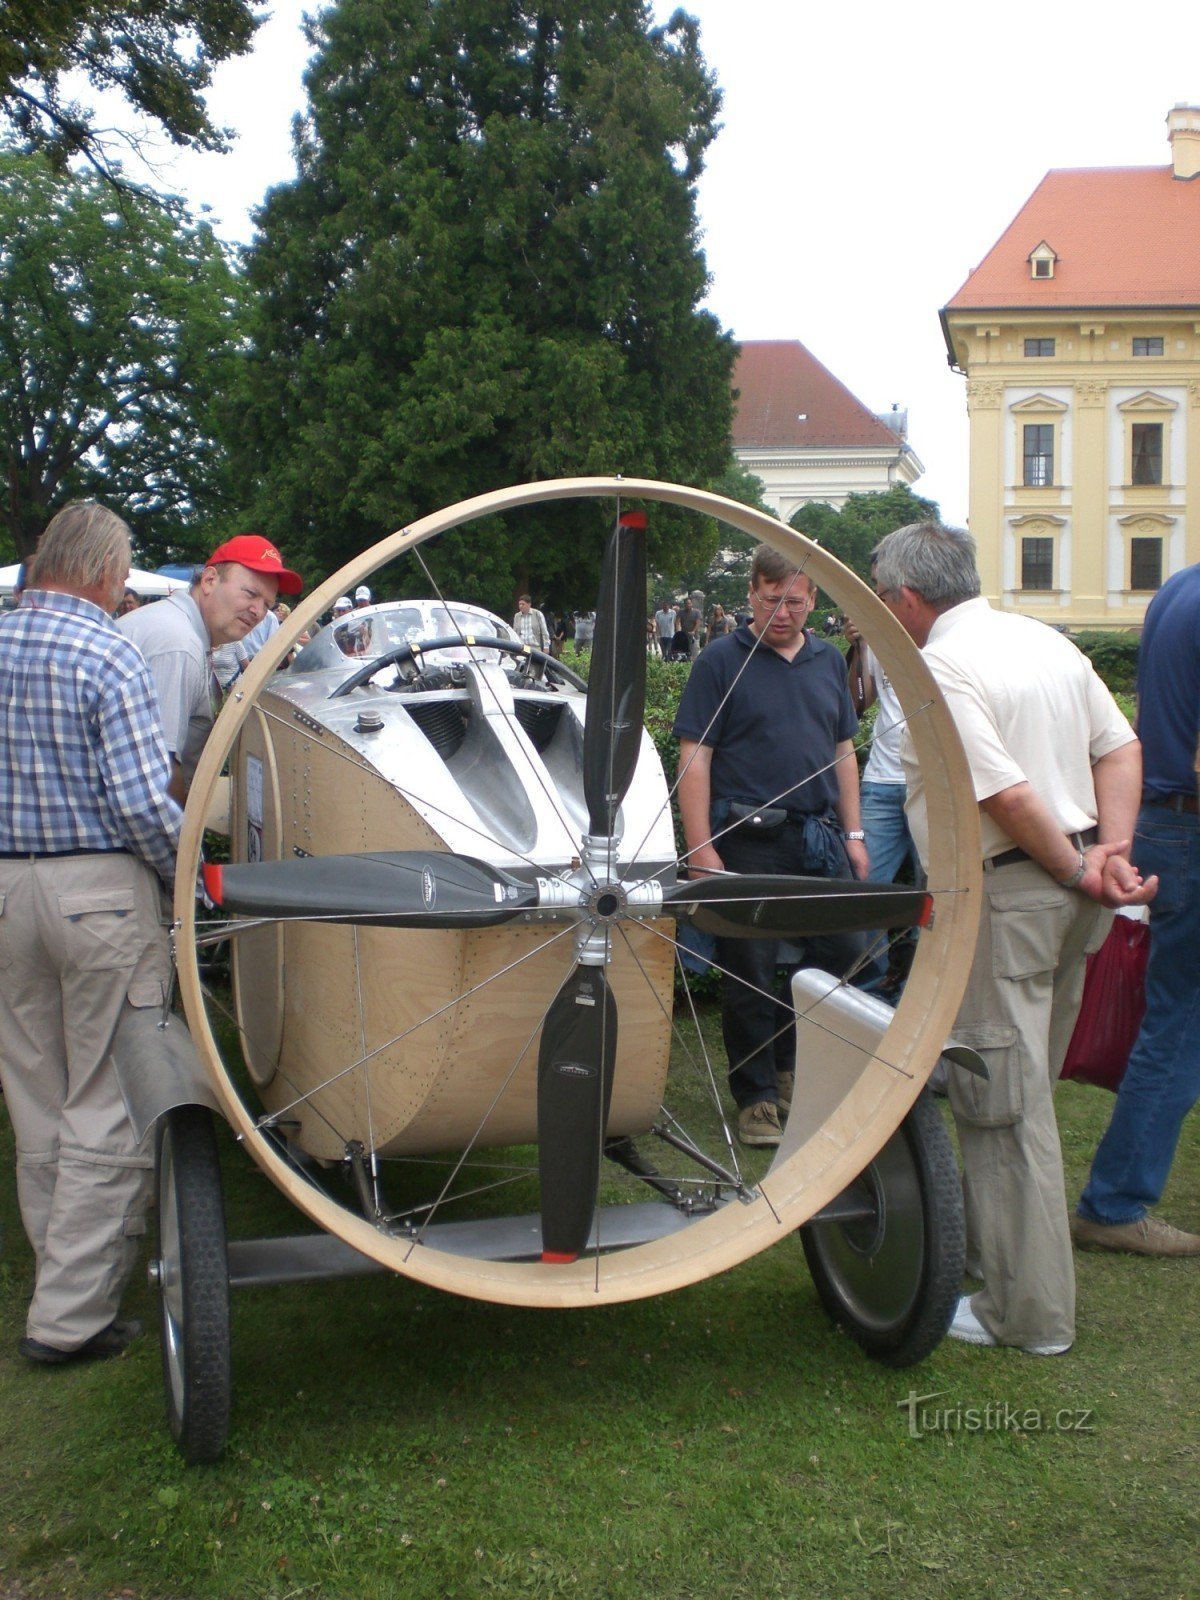 Oldtimer festival Slavkov perto de Brno